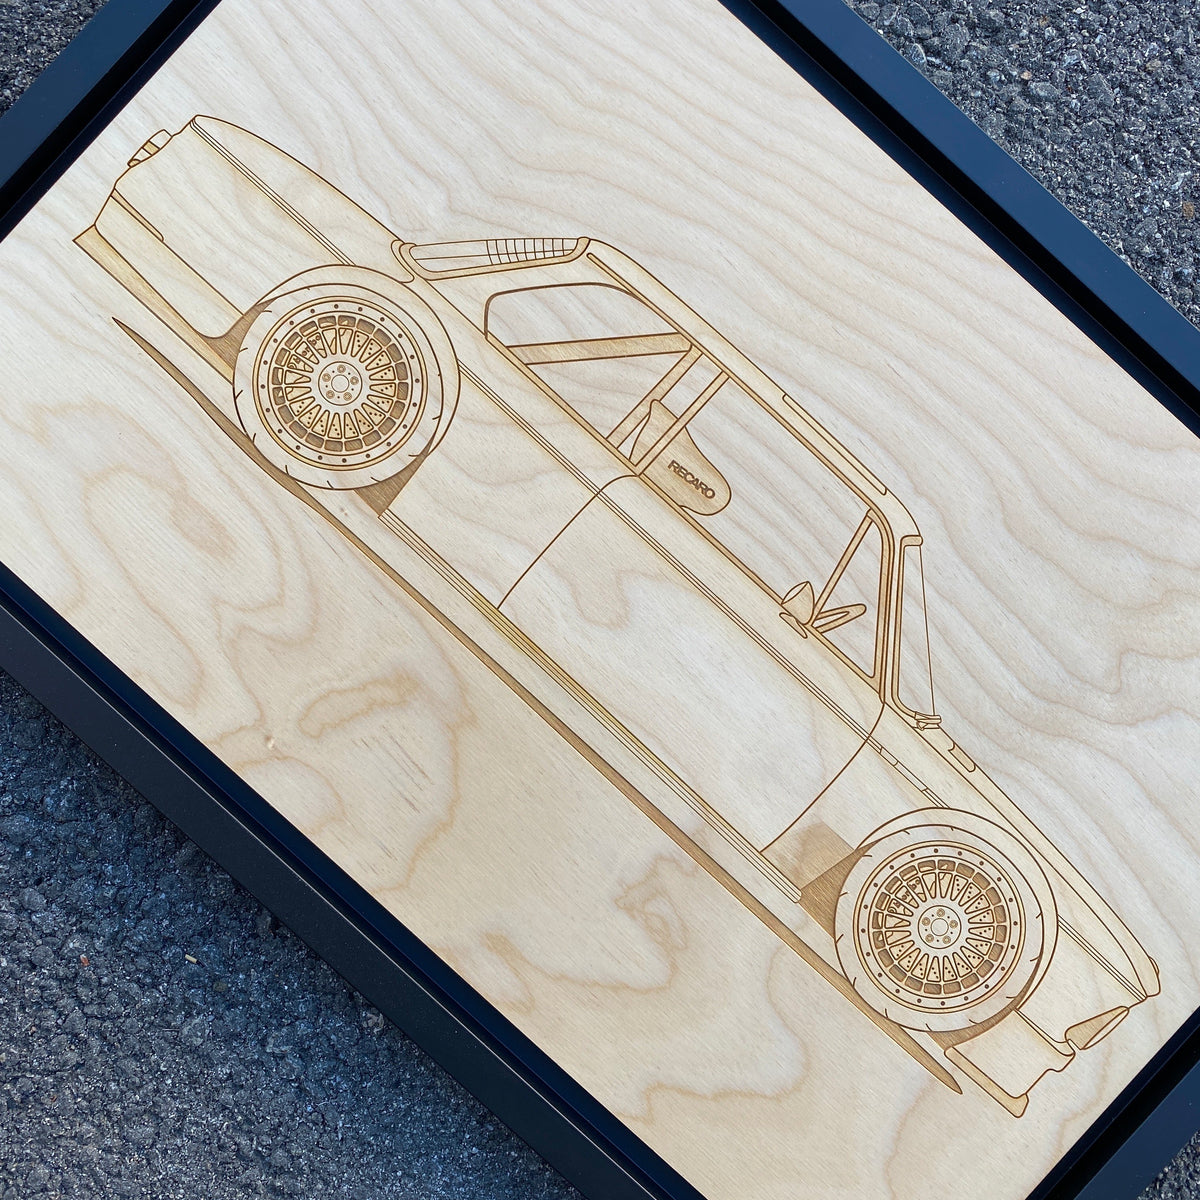 BMW 2002 Framed Wood Engraved Artwork